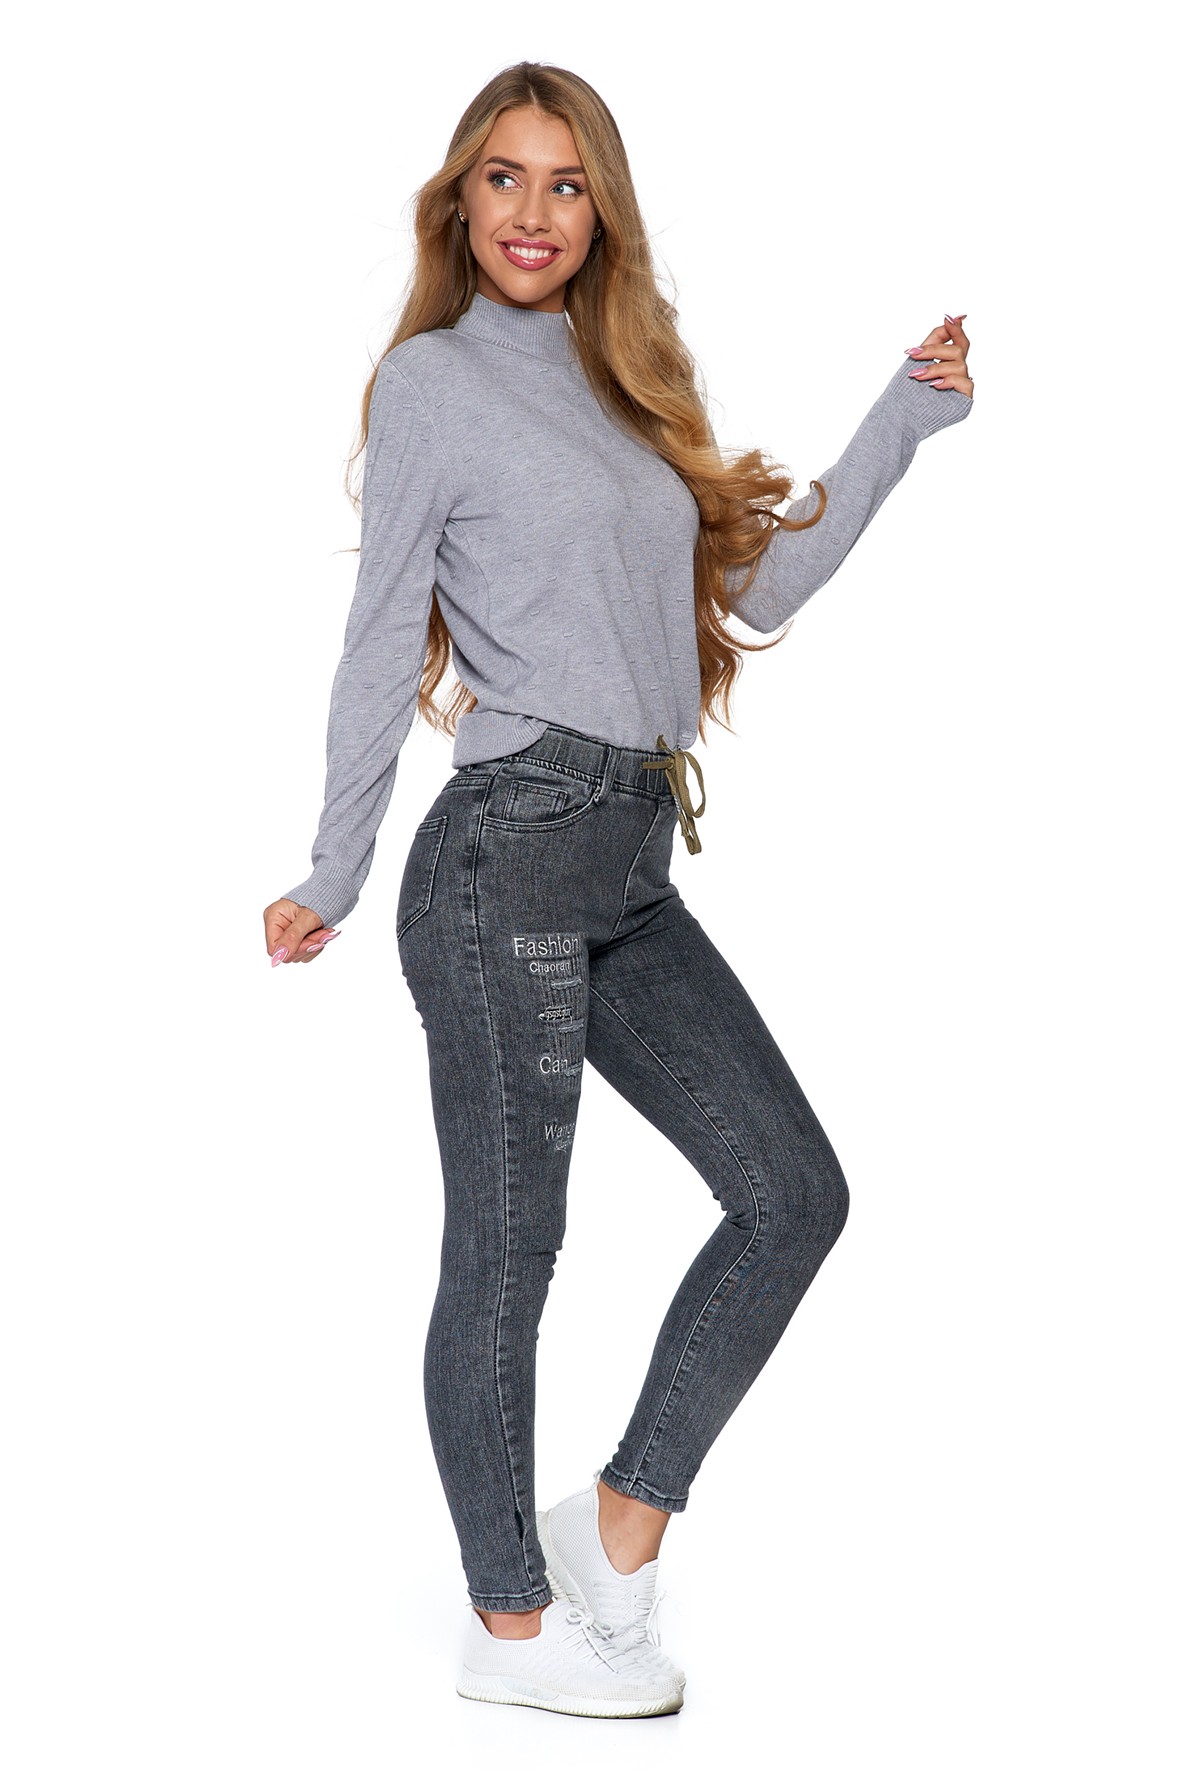 Spodnie damskie jeansowe z praktycznym wiązaniem - szare